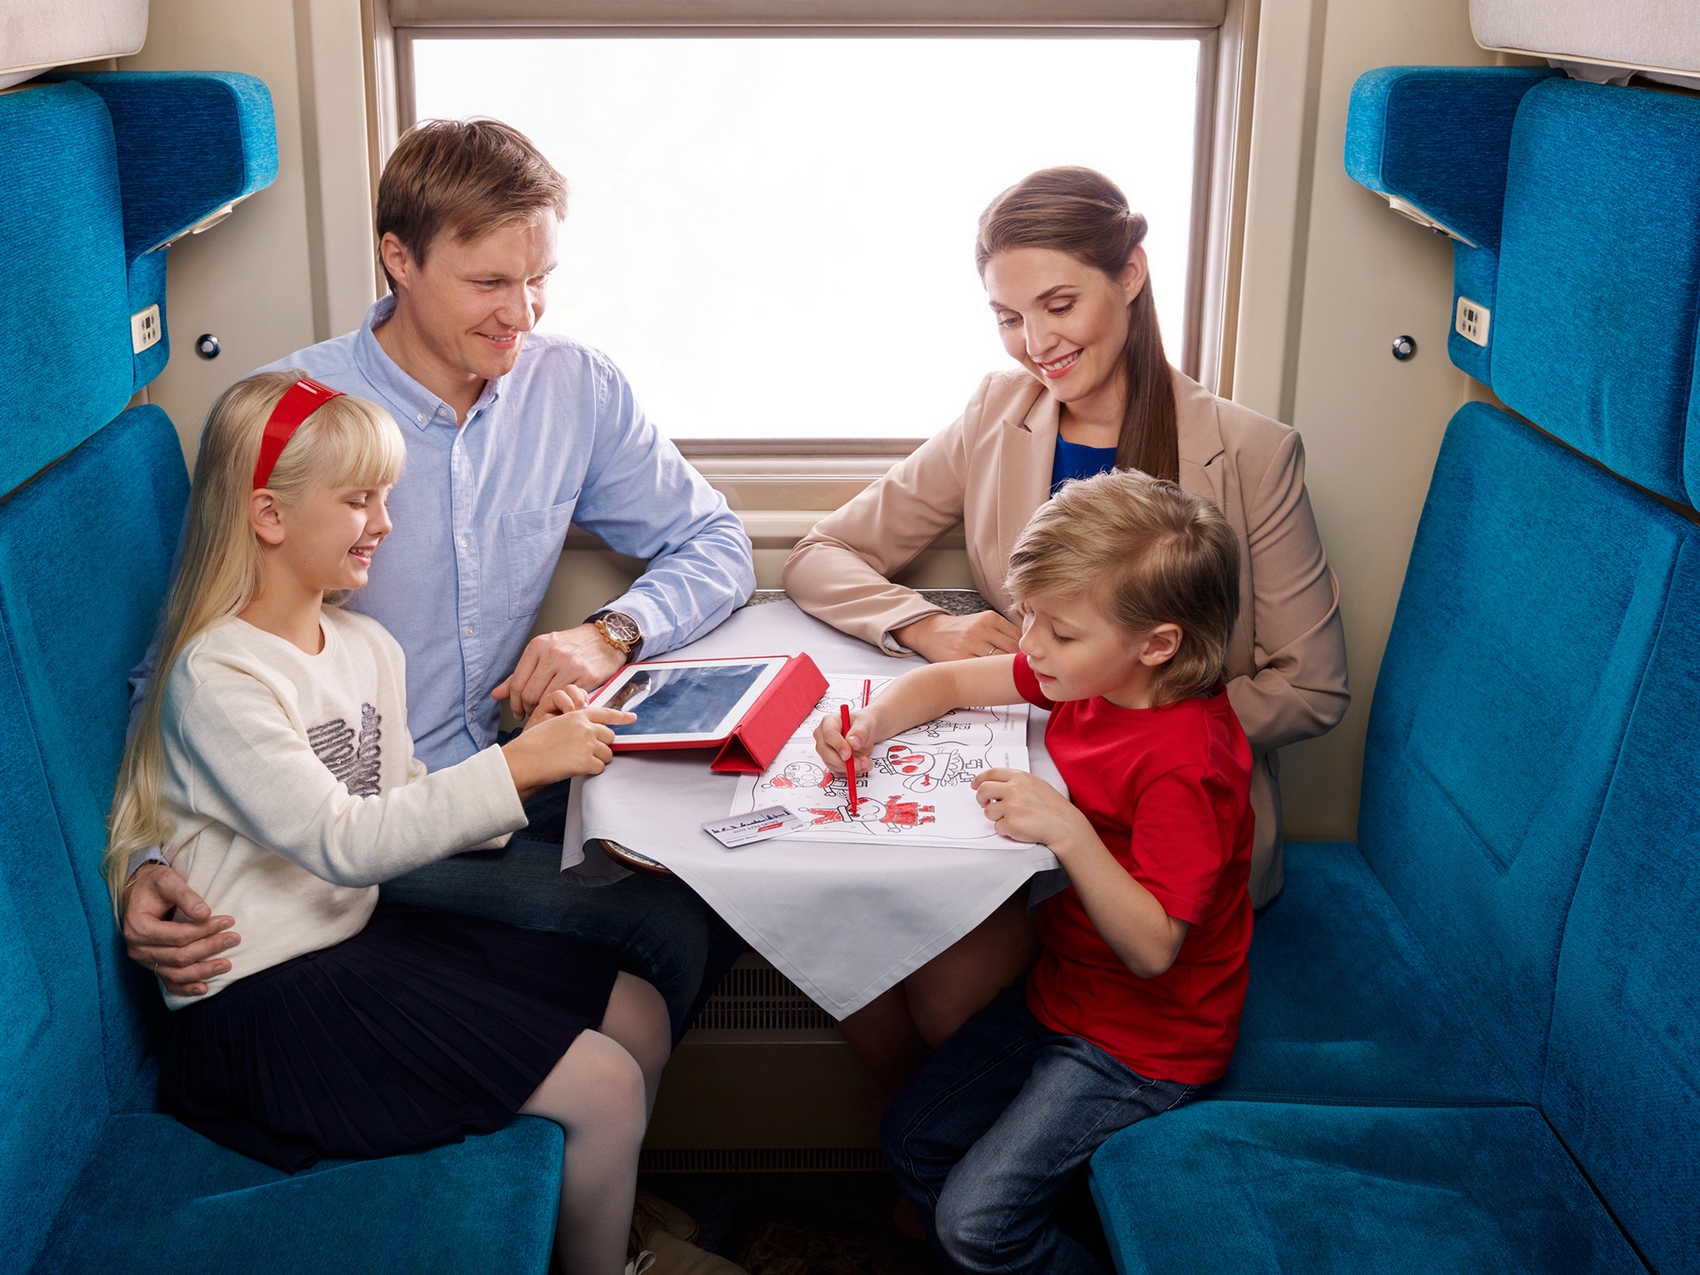 Ржд дети до 17 лет. Путешествие на поезде семьей. Поезда для детей. Пассажиры в поезде. Путешествие с детьми на поезде.